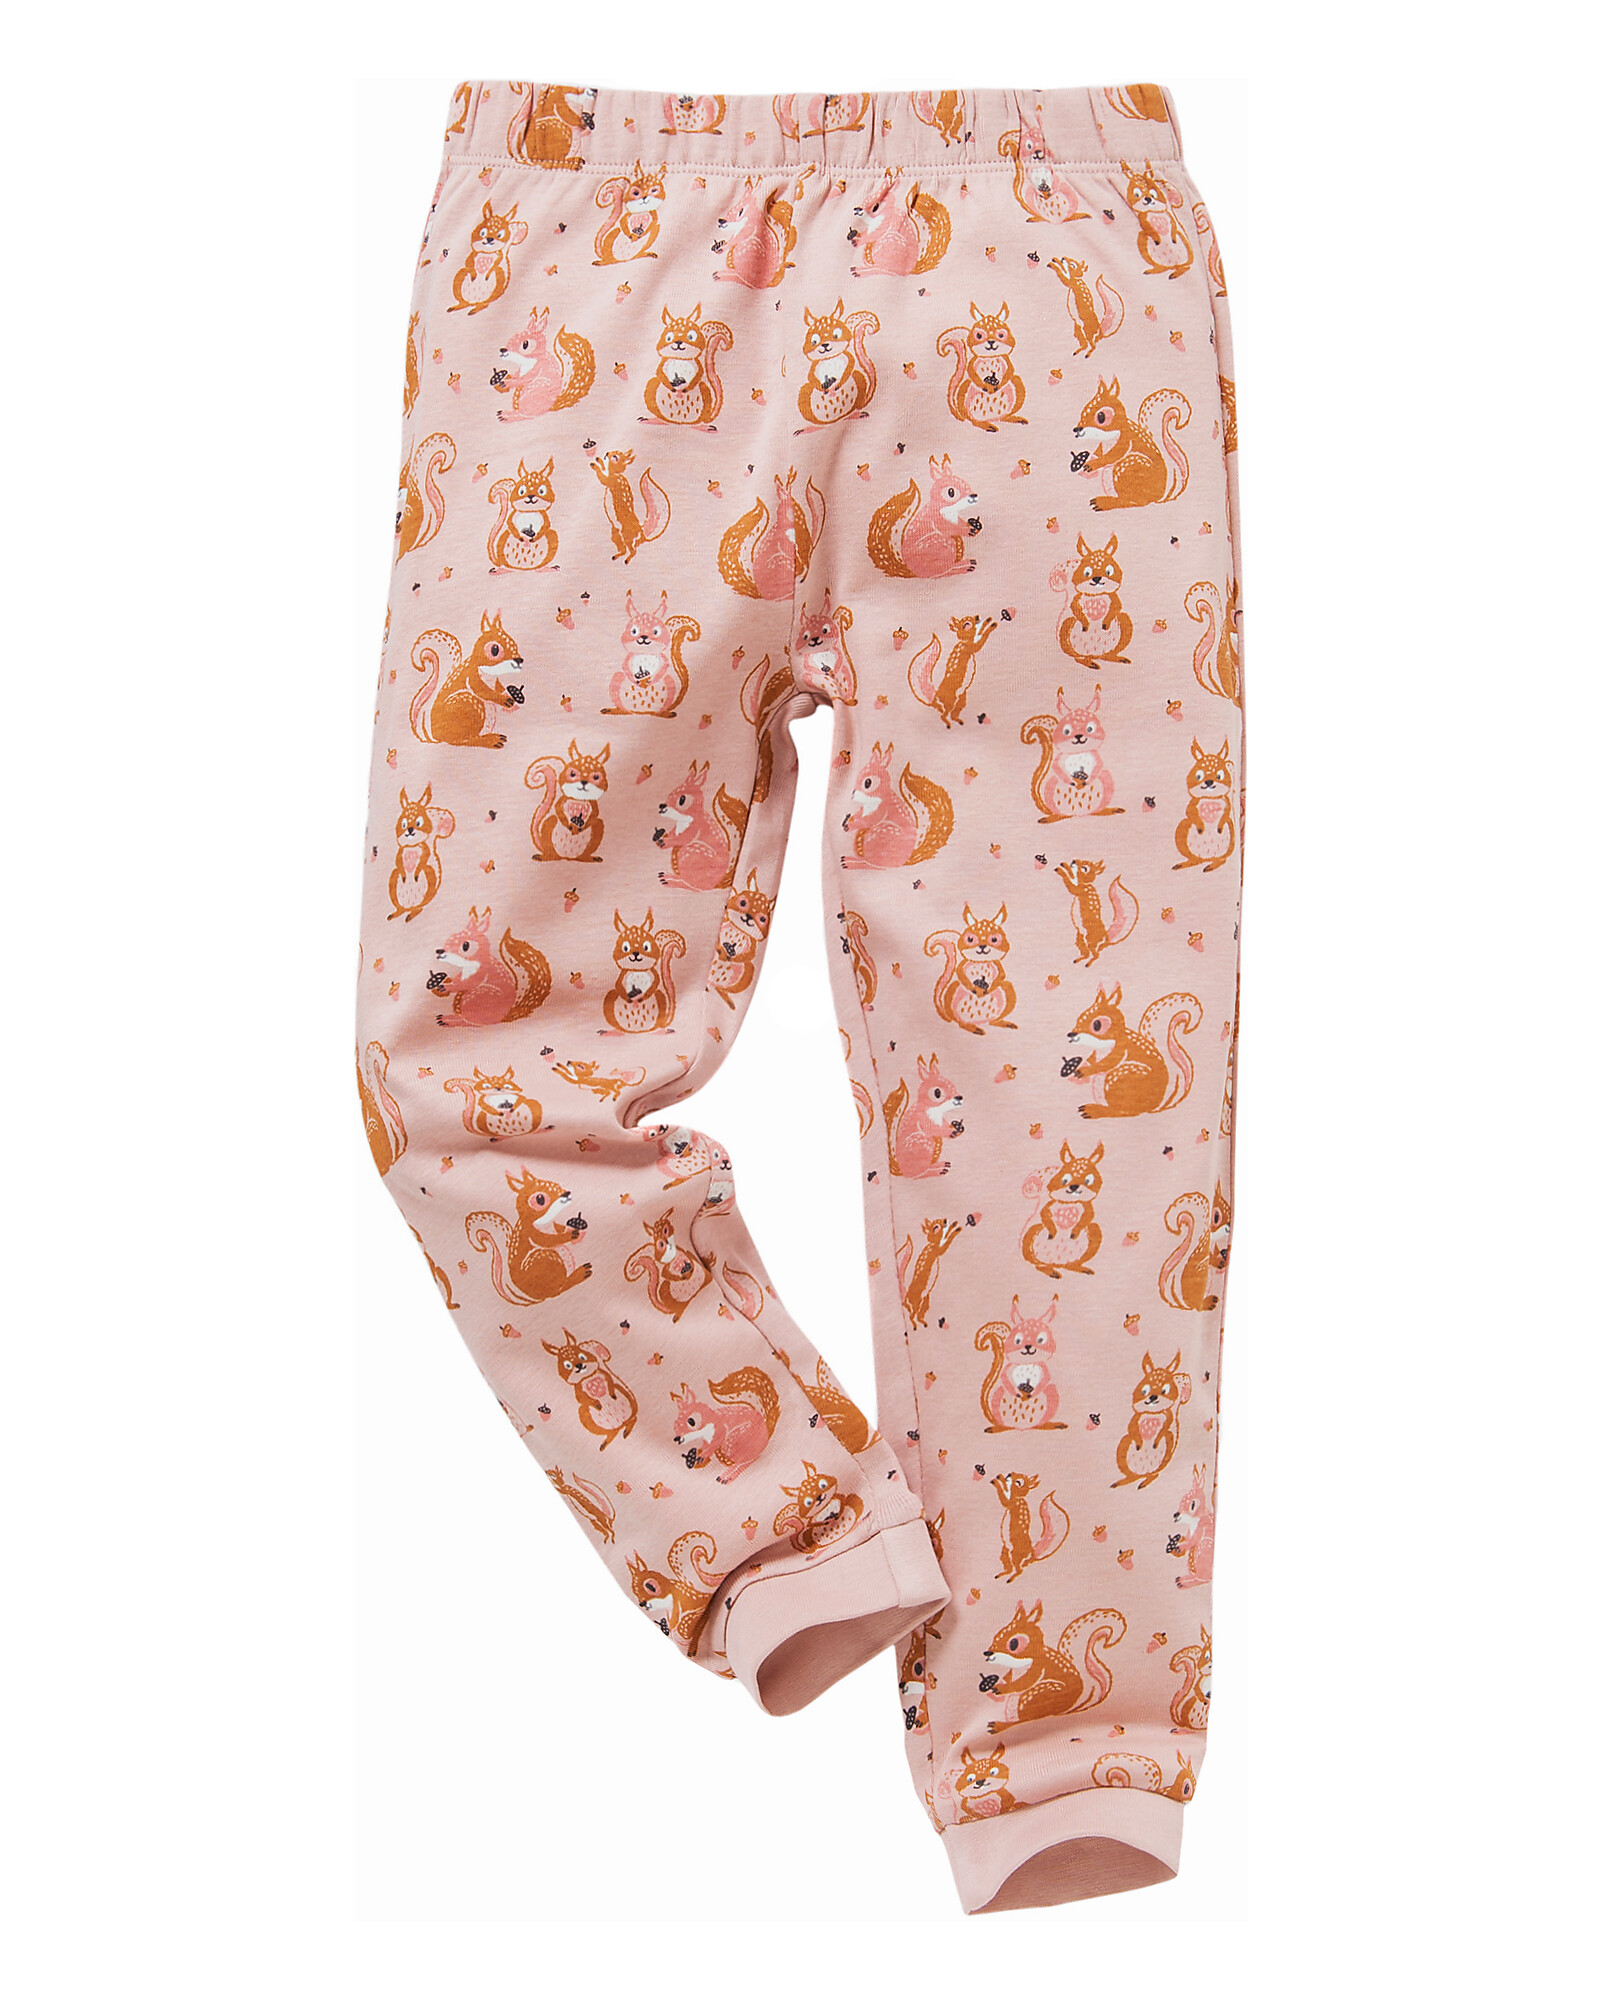 People Wear Organic Long-Sleeved Pajamas - Squirrel Pink - Organic